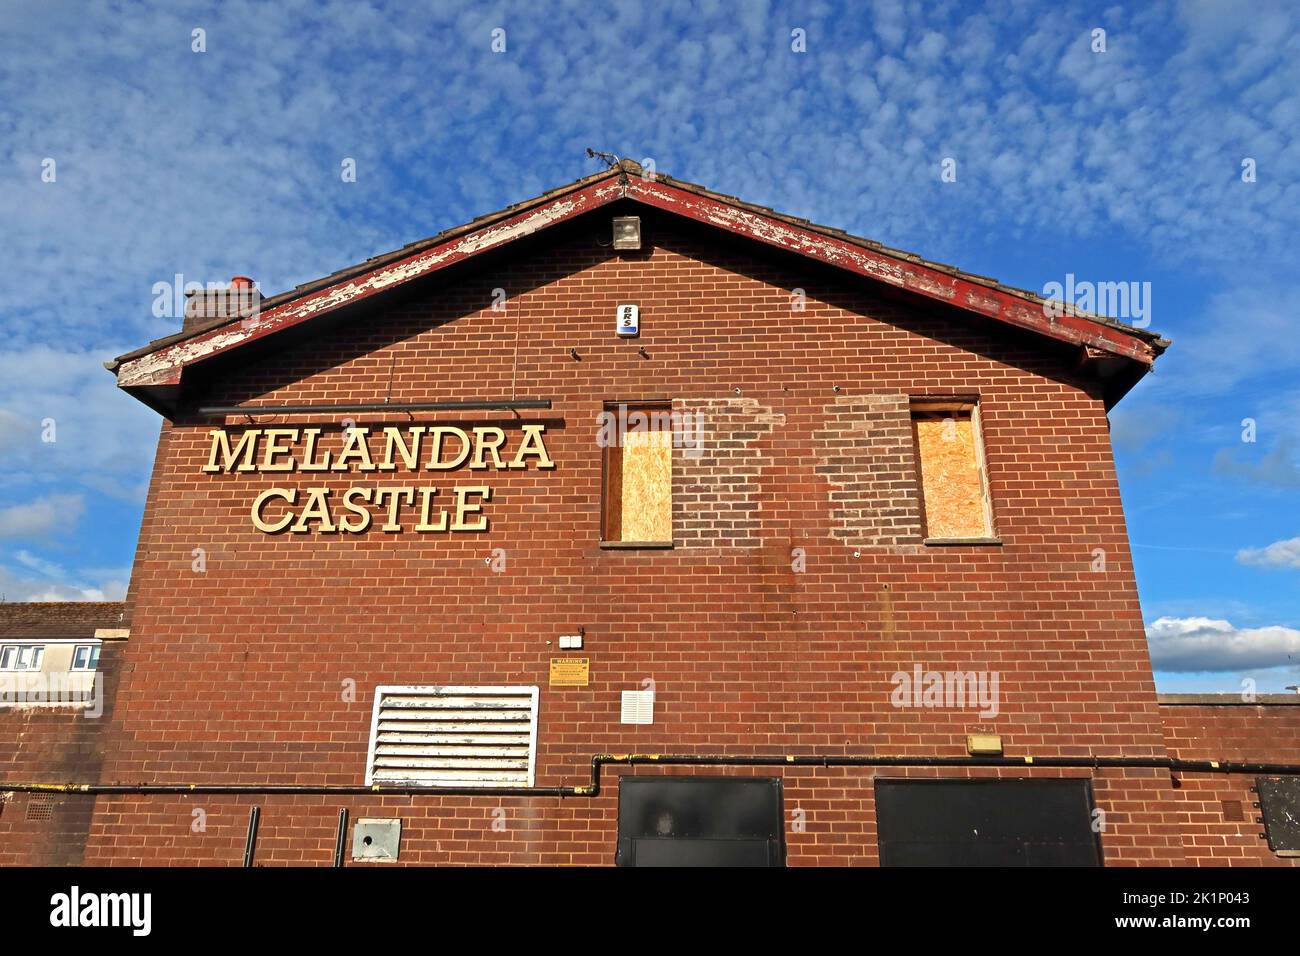 Le Melandra Castle Pub, maintenant fermé et monté à bord, Winster Mews, Gamesley, Glossop, Derbyshire, SK13 Banque D'Images